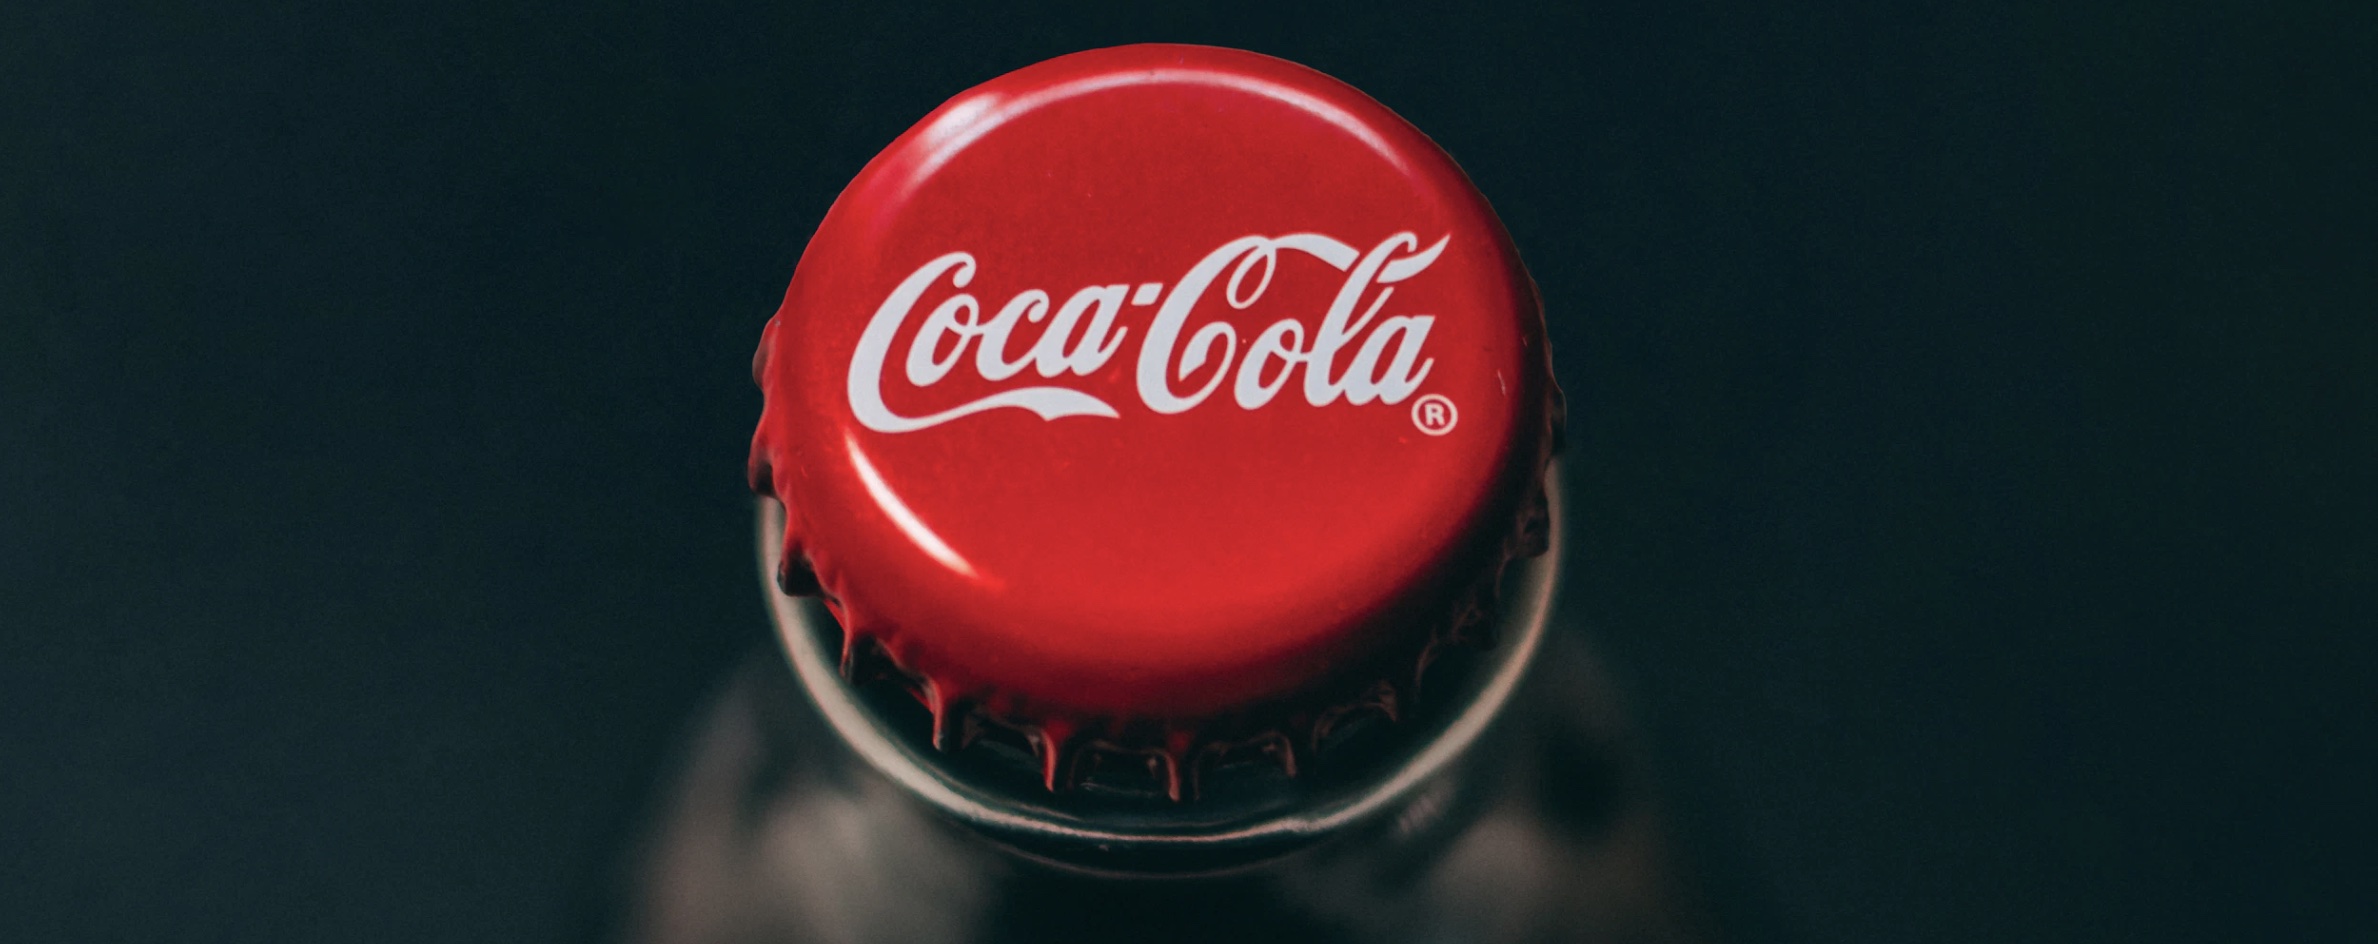 Coca-Cola регистрирует в России ушедшие с рынка бренды